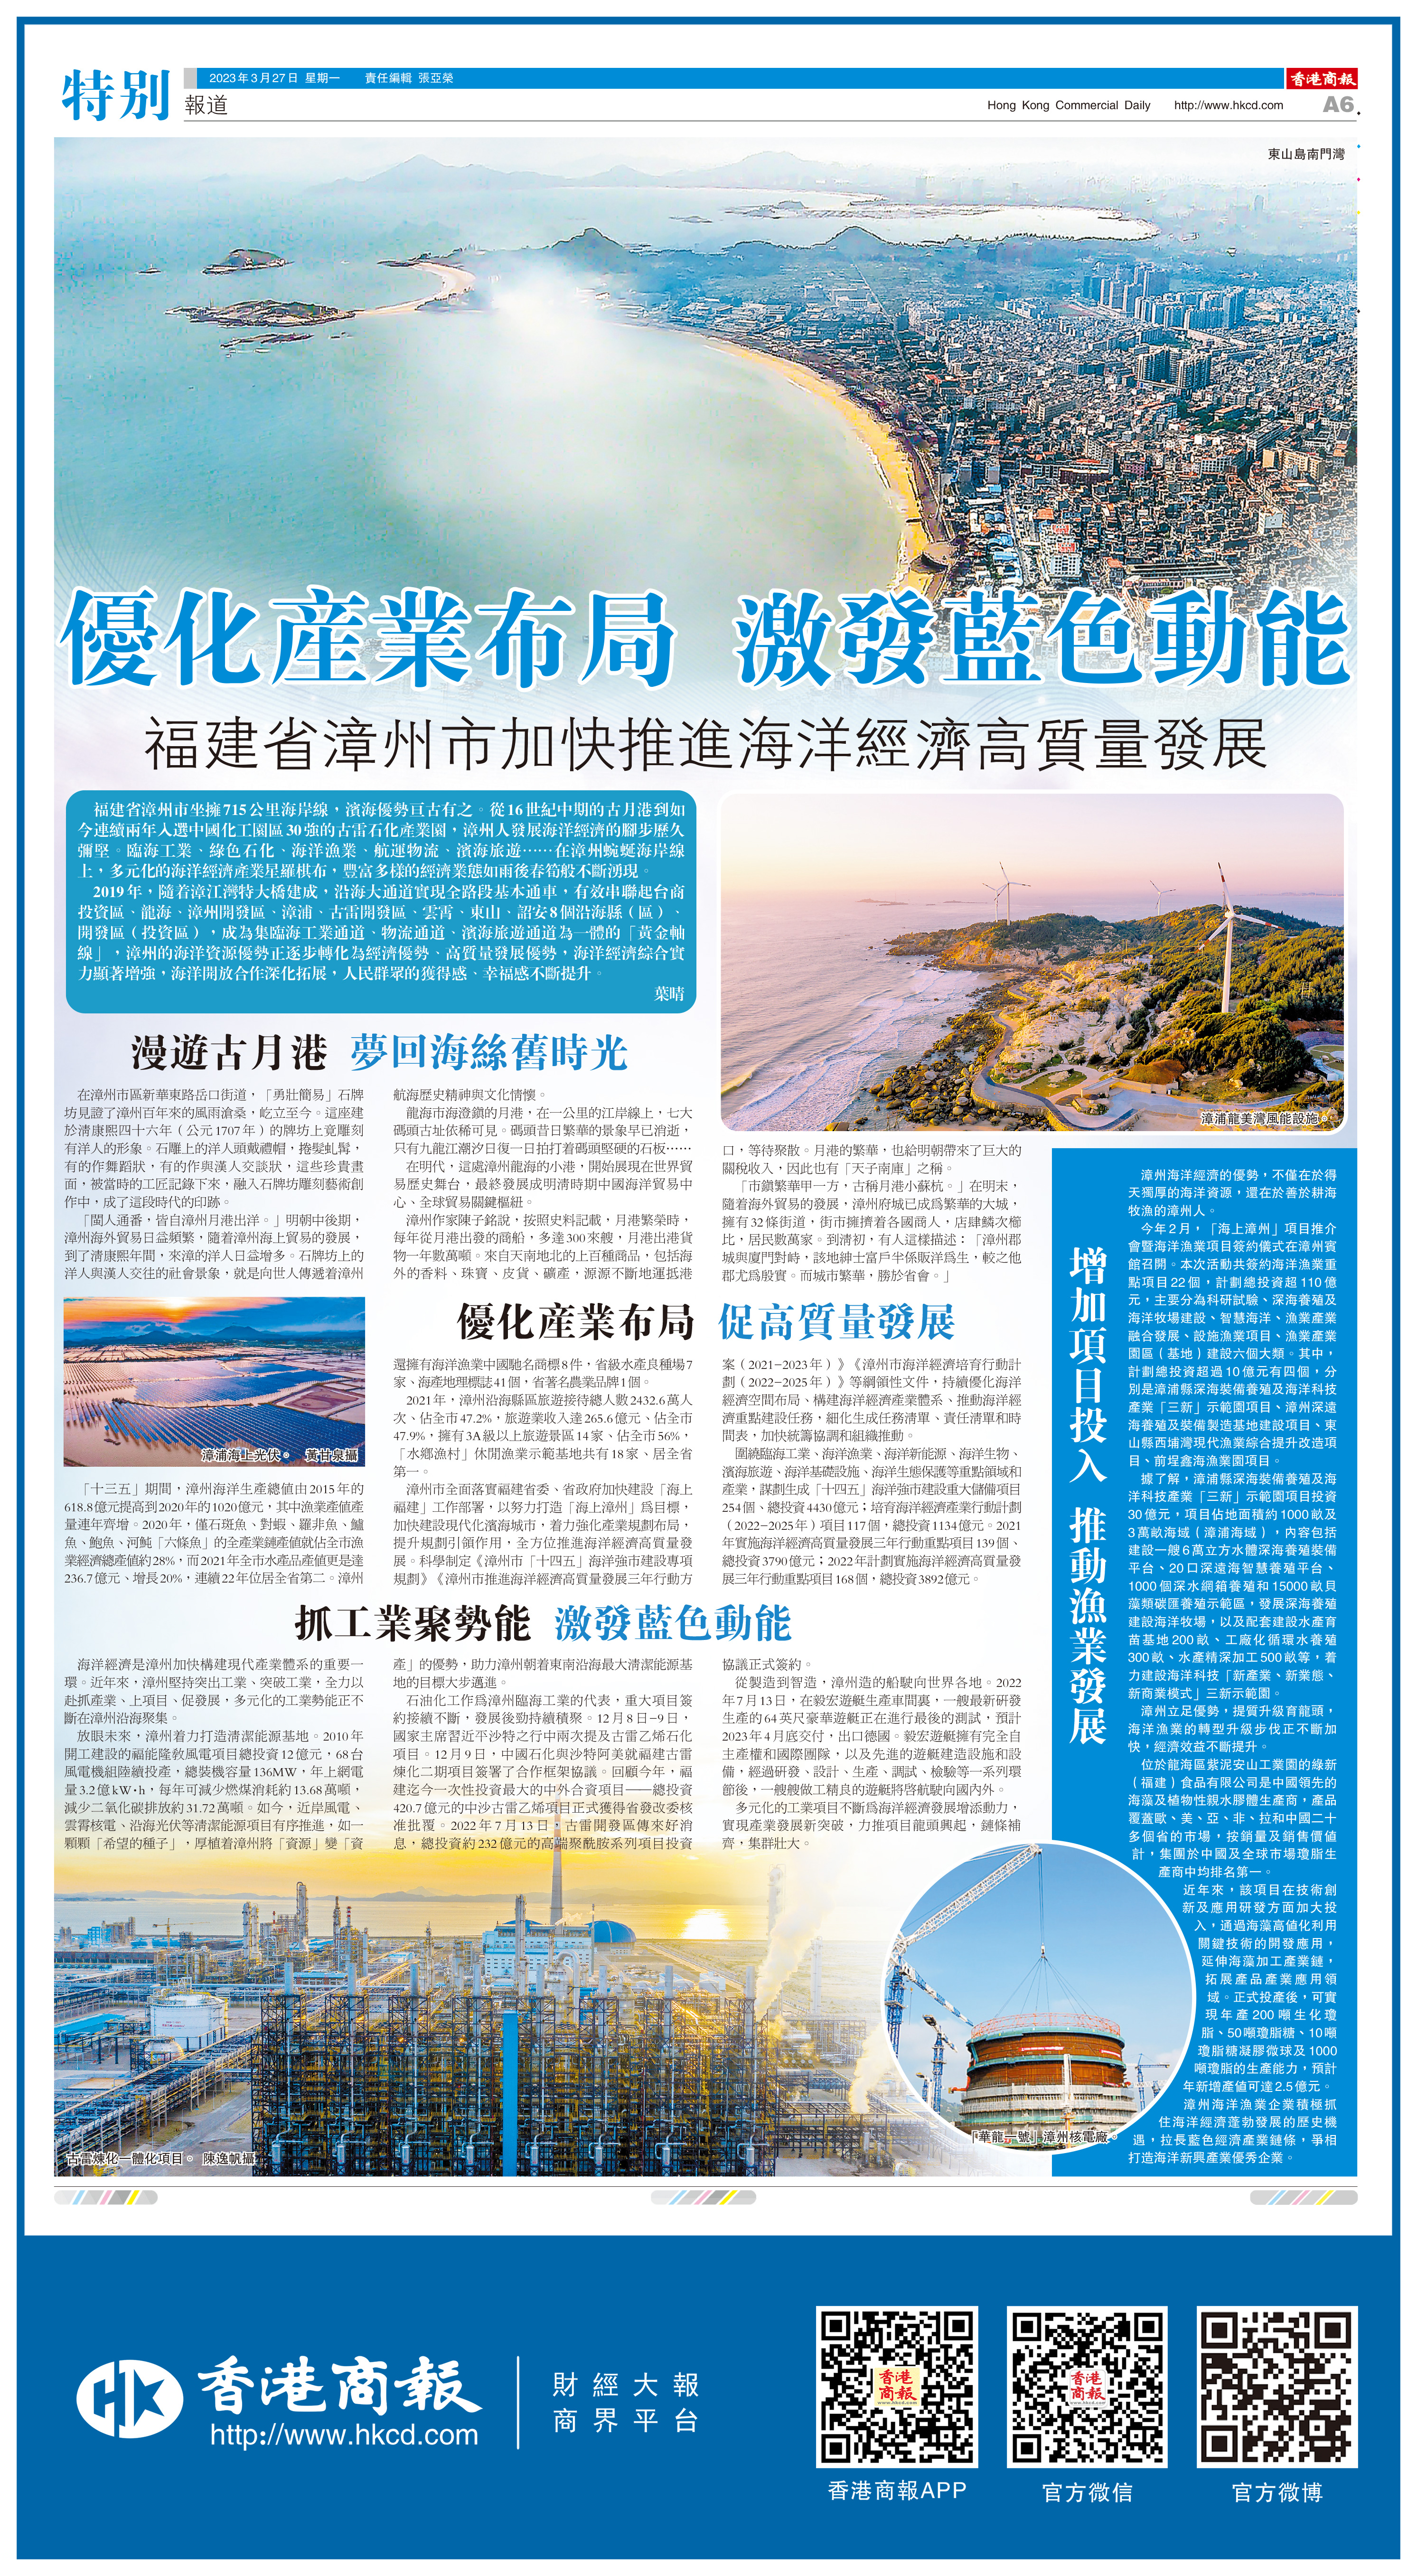     優化產業布局 激發藍色動能     福建省漳州市加快推進海洋經濟高質量發展